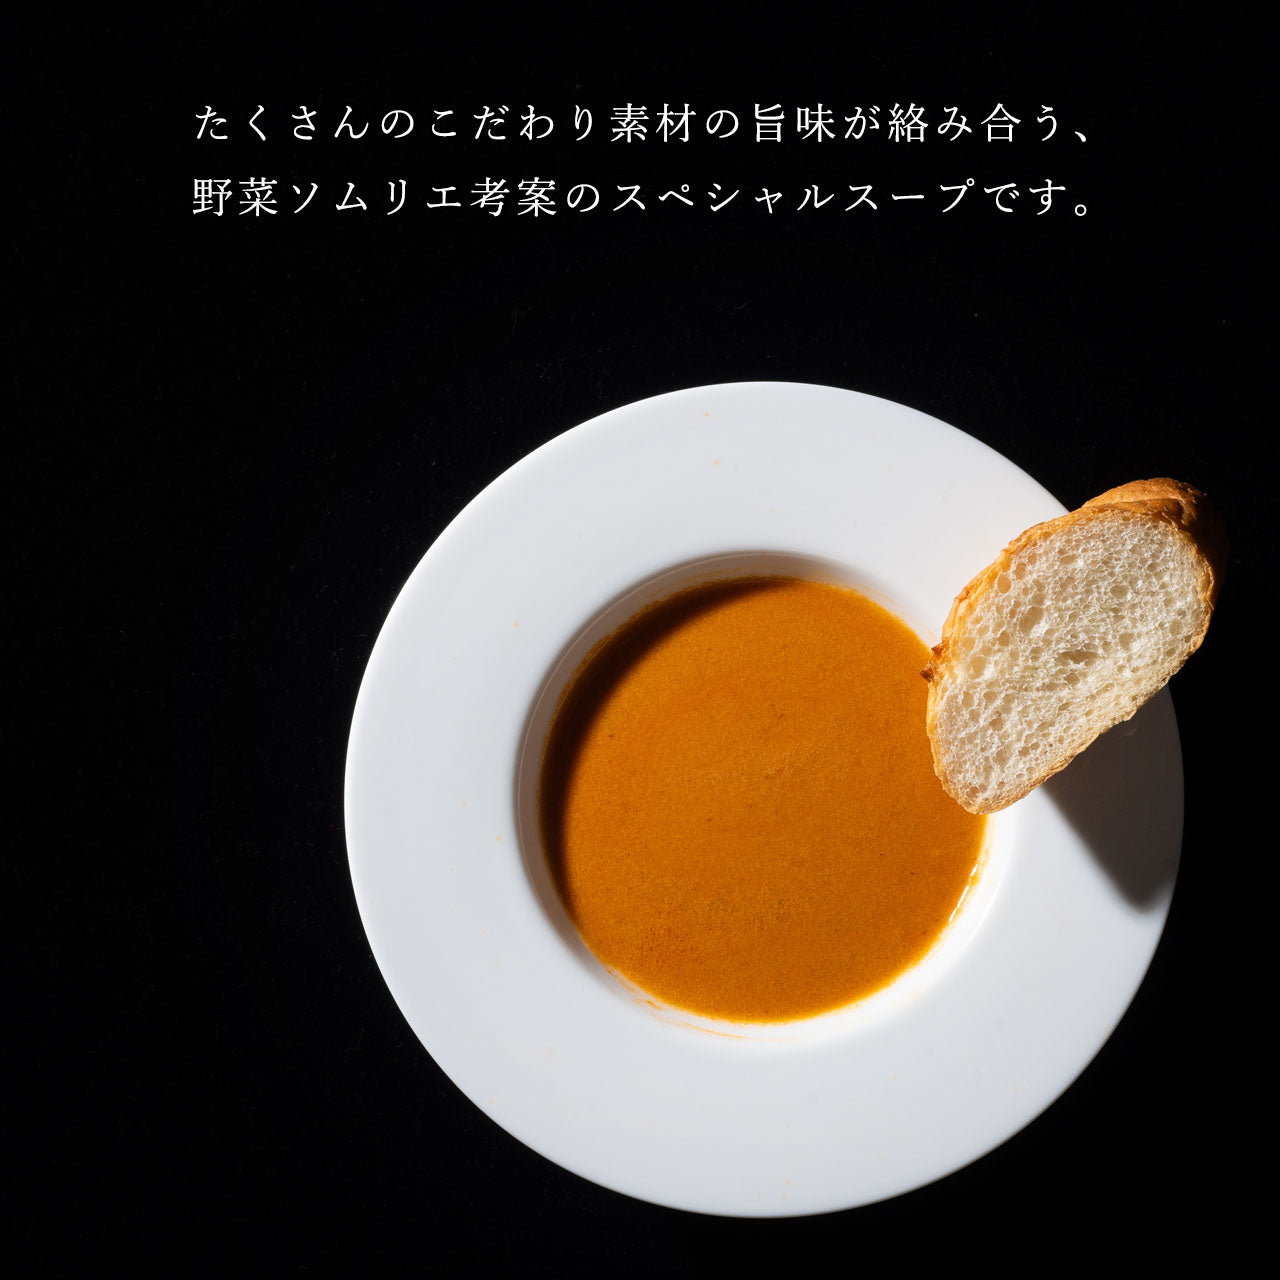 【スペシャルスープ入りギフト】オマール海老とトラフグのビスク入り7個ギフトセット